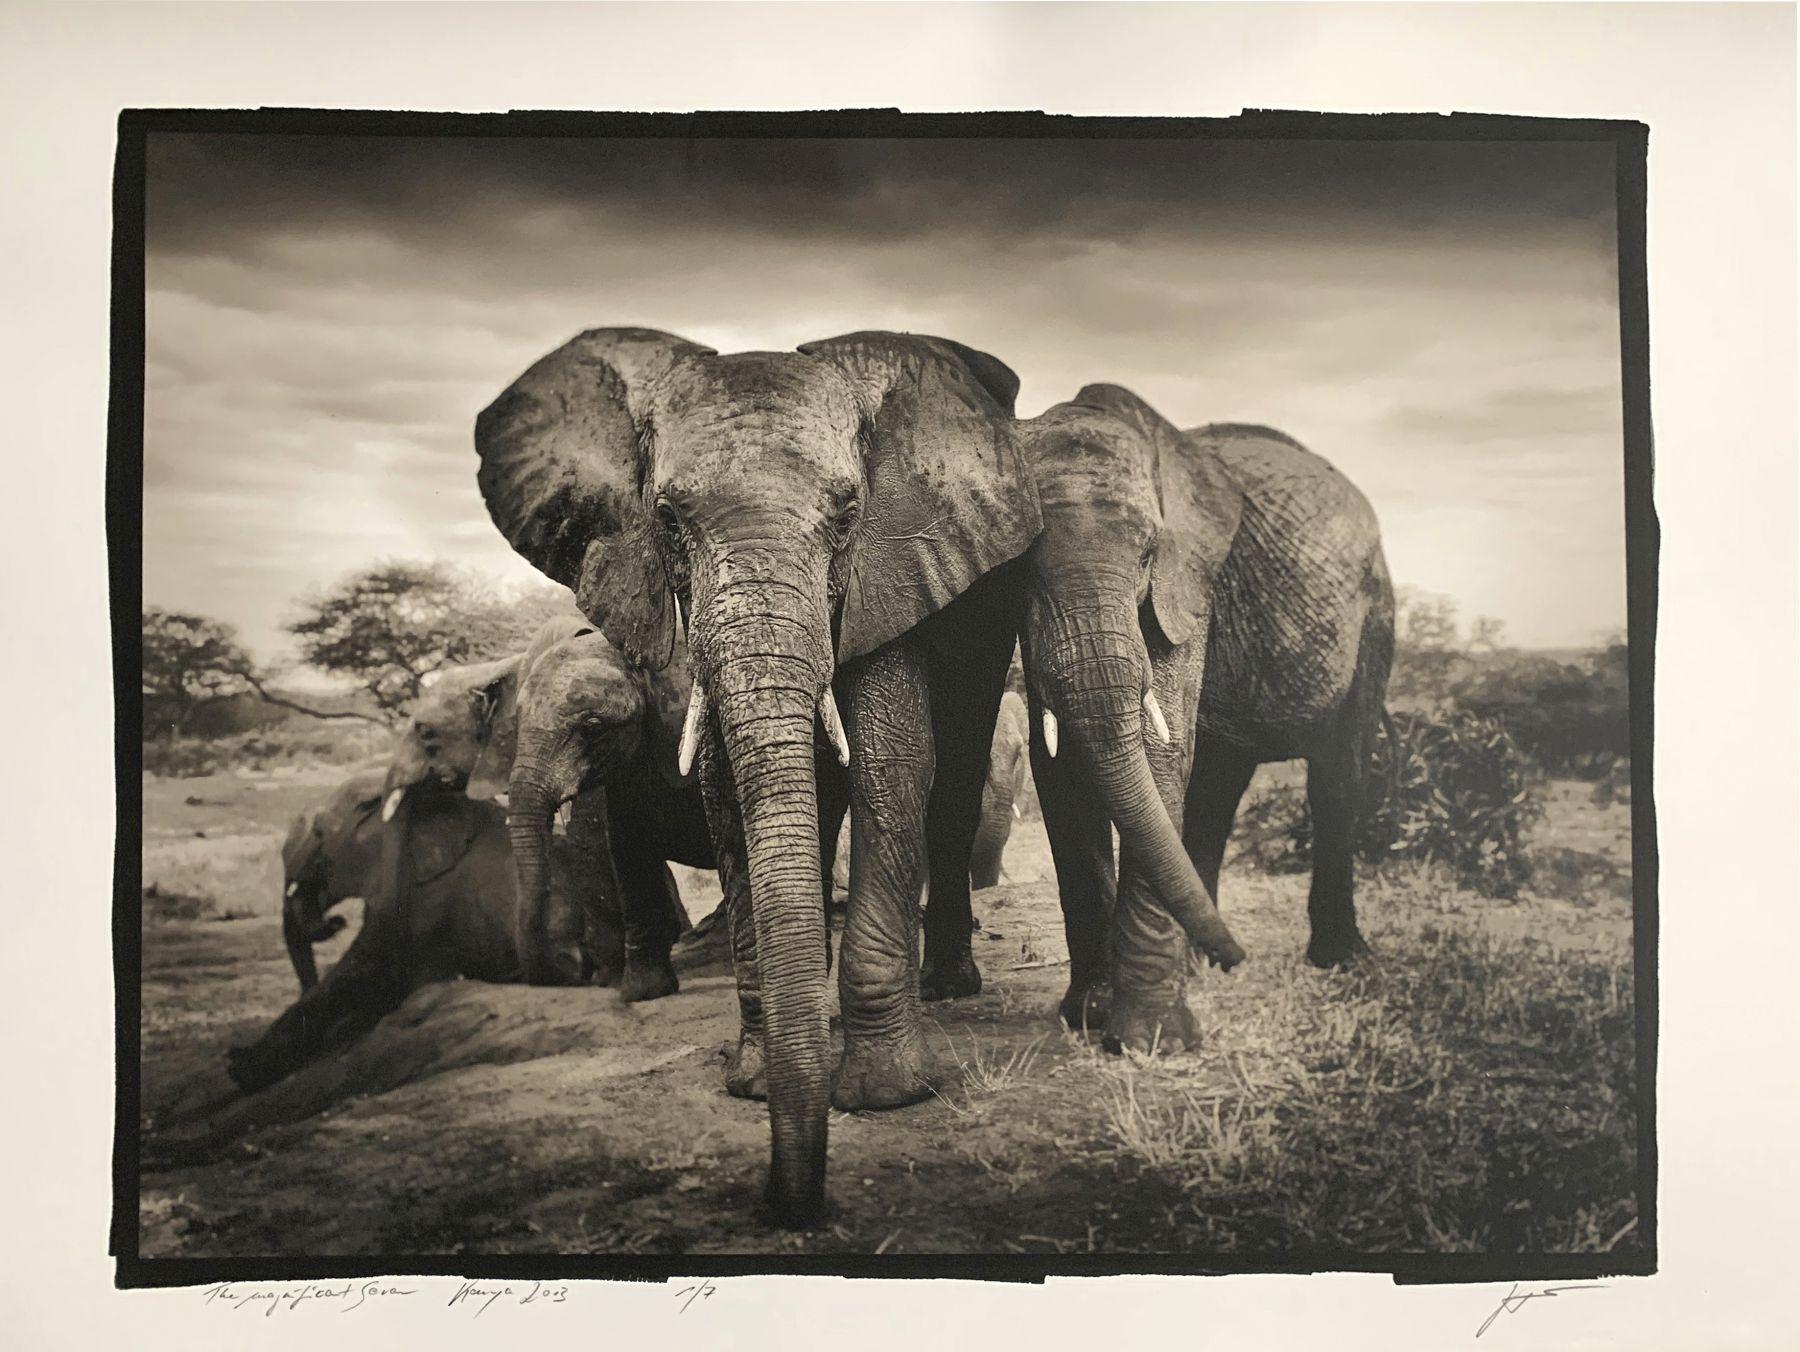 Das prächtige Sieben, Kenia – Photograph von Joachim Schmeisser